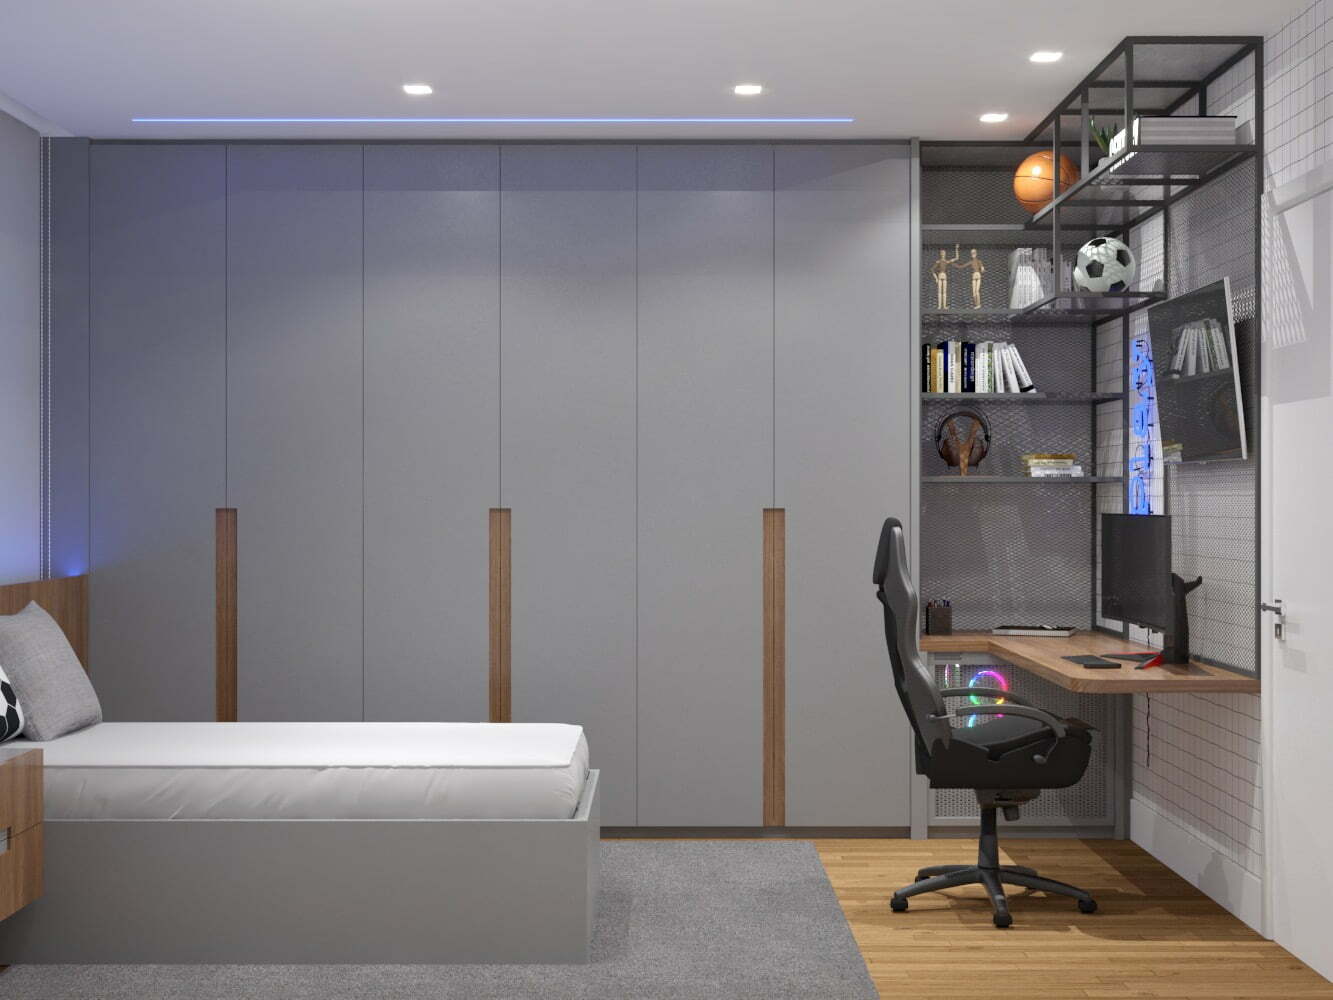 Home Office: como adaptar nossa casa em um ambiente de trabalho - quarto filho 01